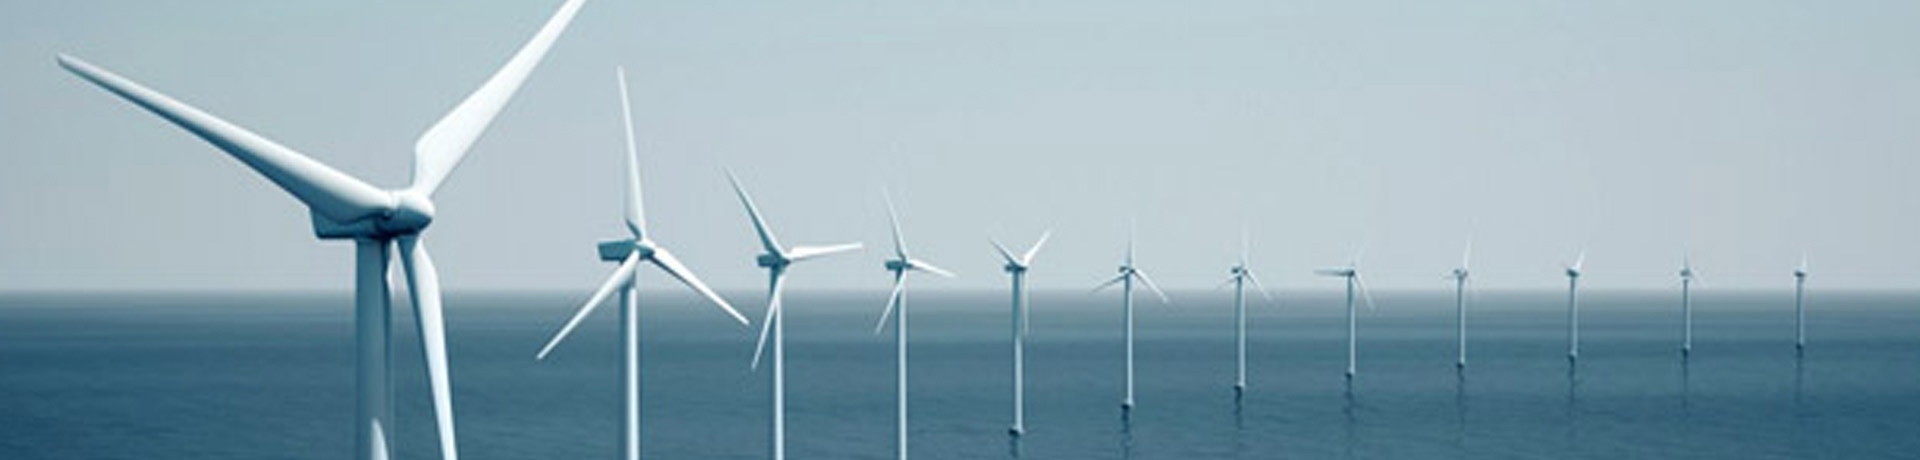 St Brieuc offshore wind farm